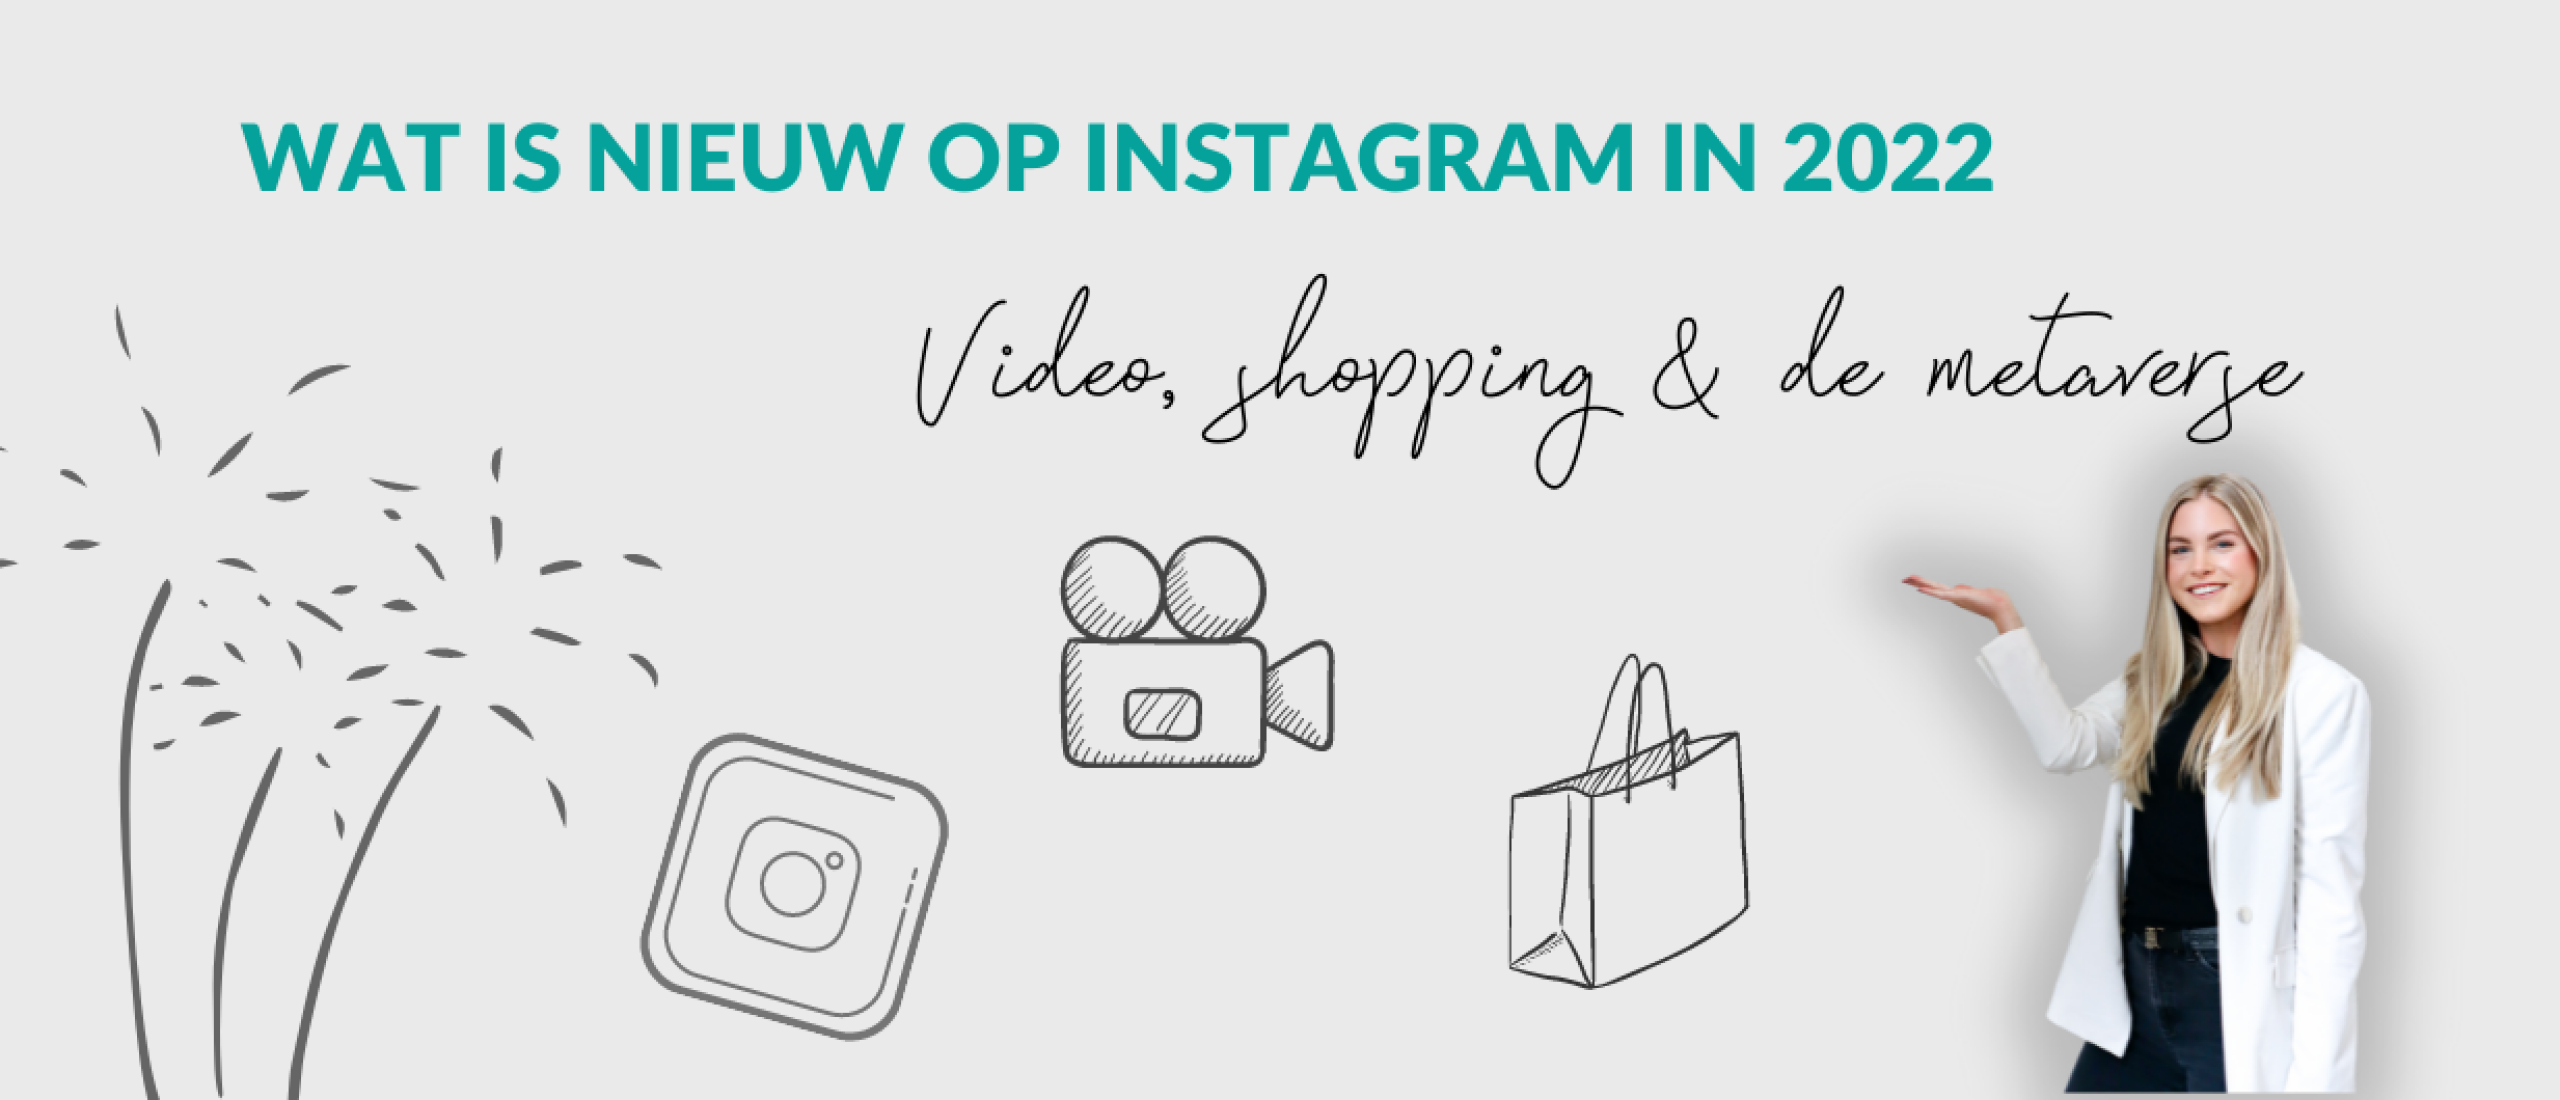 Wat is nieuw op Instagram in 2022: Video, shopping & de metaverse